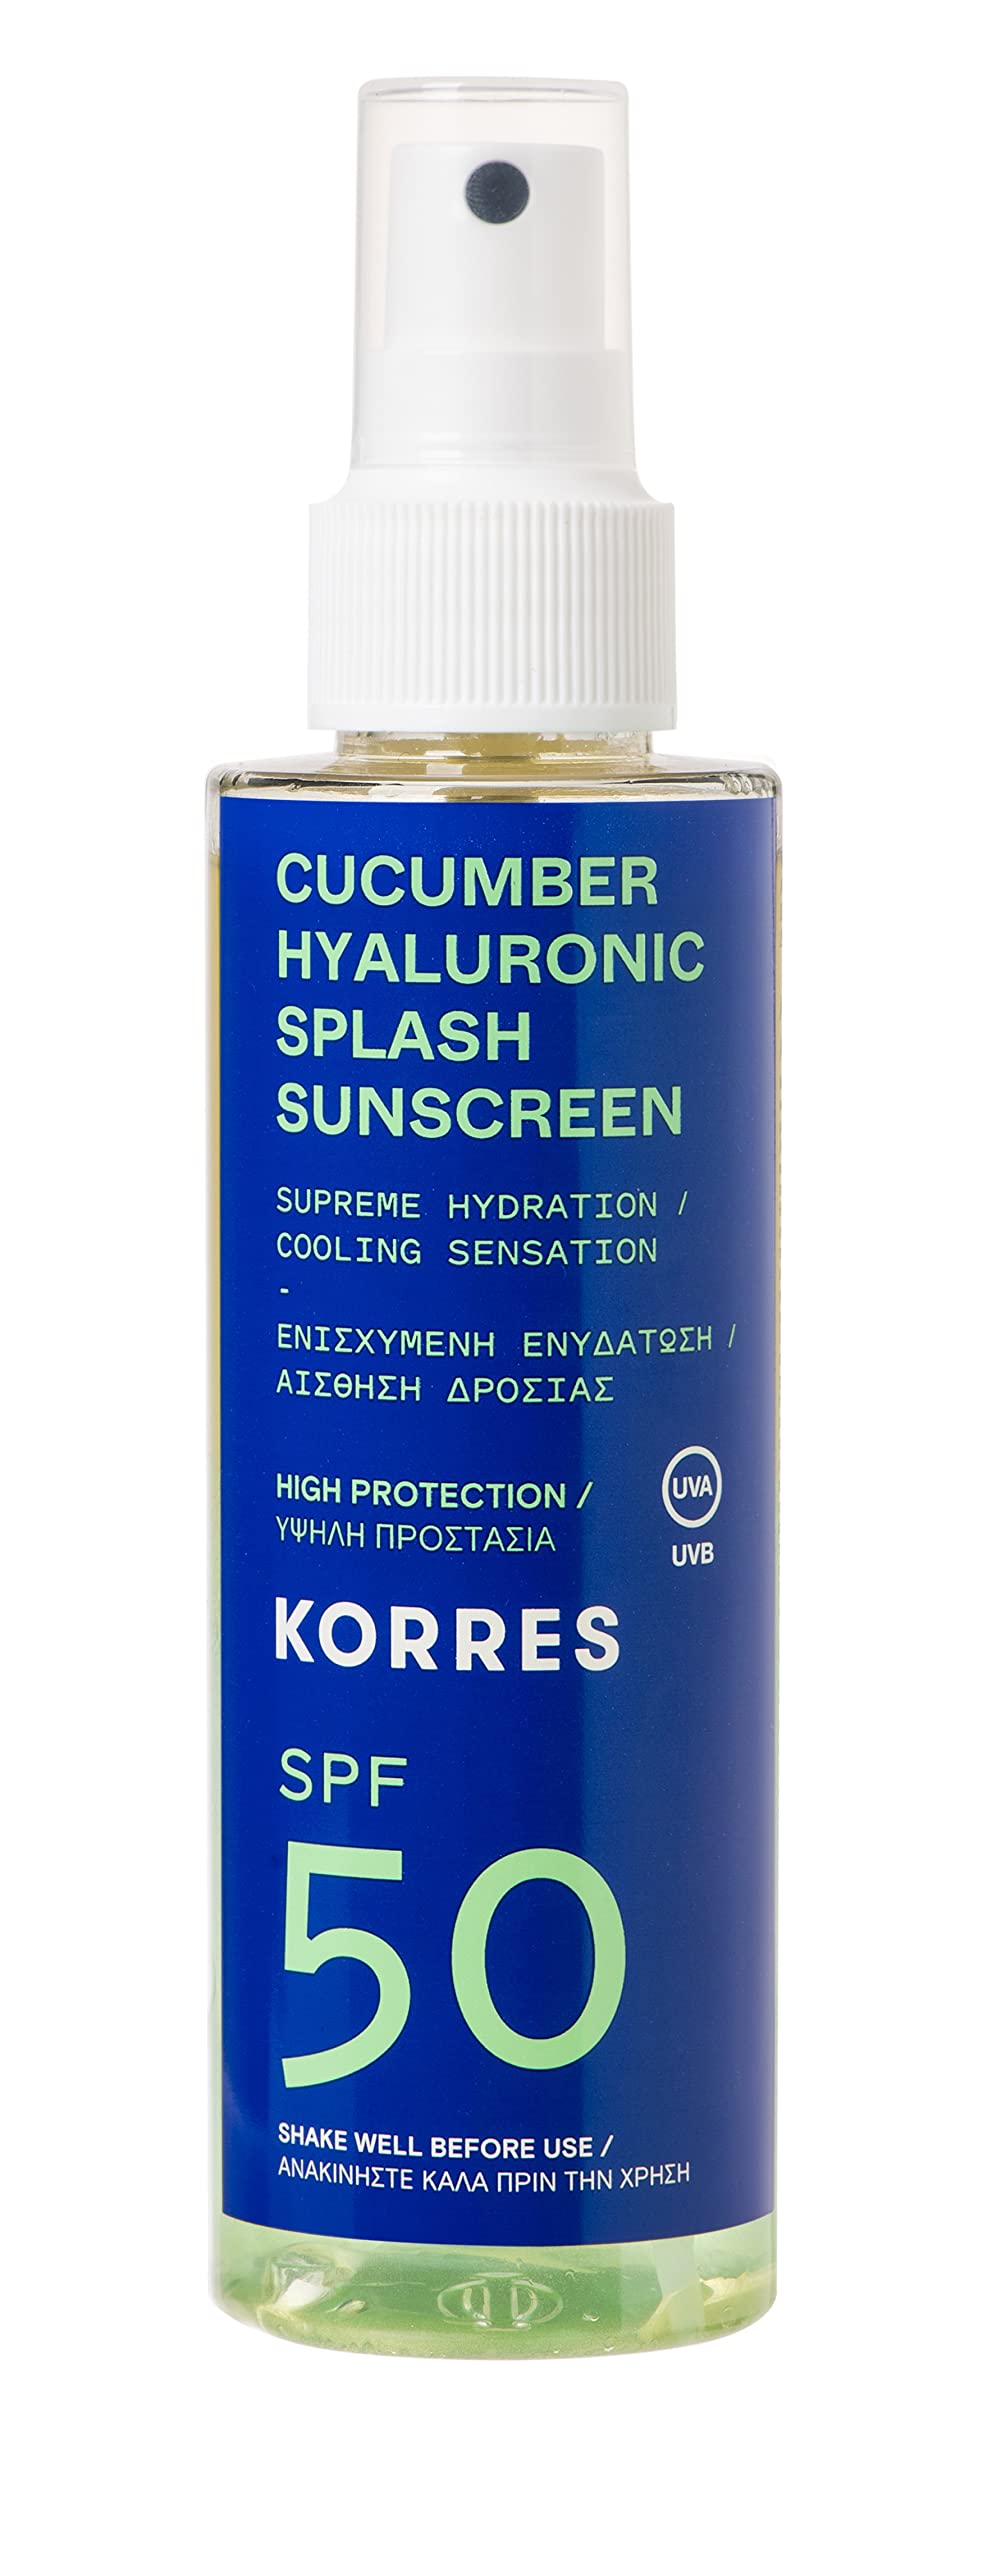 KORRES Cucumber Hyaluronic Splash Sonnenschutz Spray für Gesicht & Körper SPF50, mit kühlender Wirkung, schnell einziehend & vegan, 150 ml